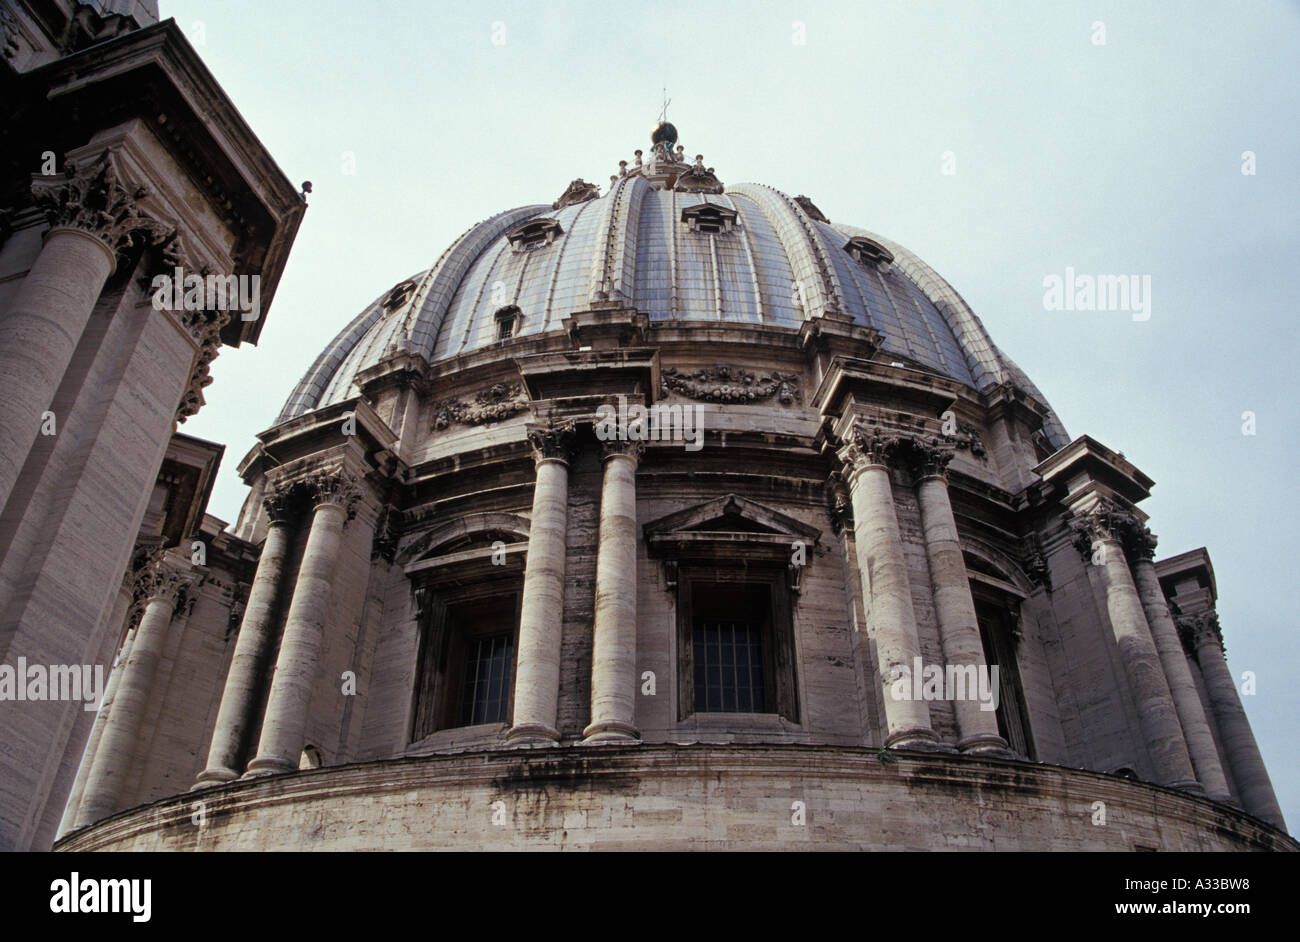 Le dôme de Saint-Pierre, Rome, Italie, Europe Banque D'Images